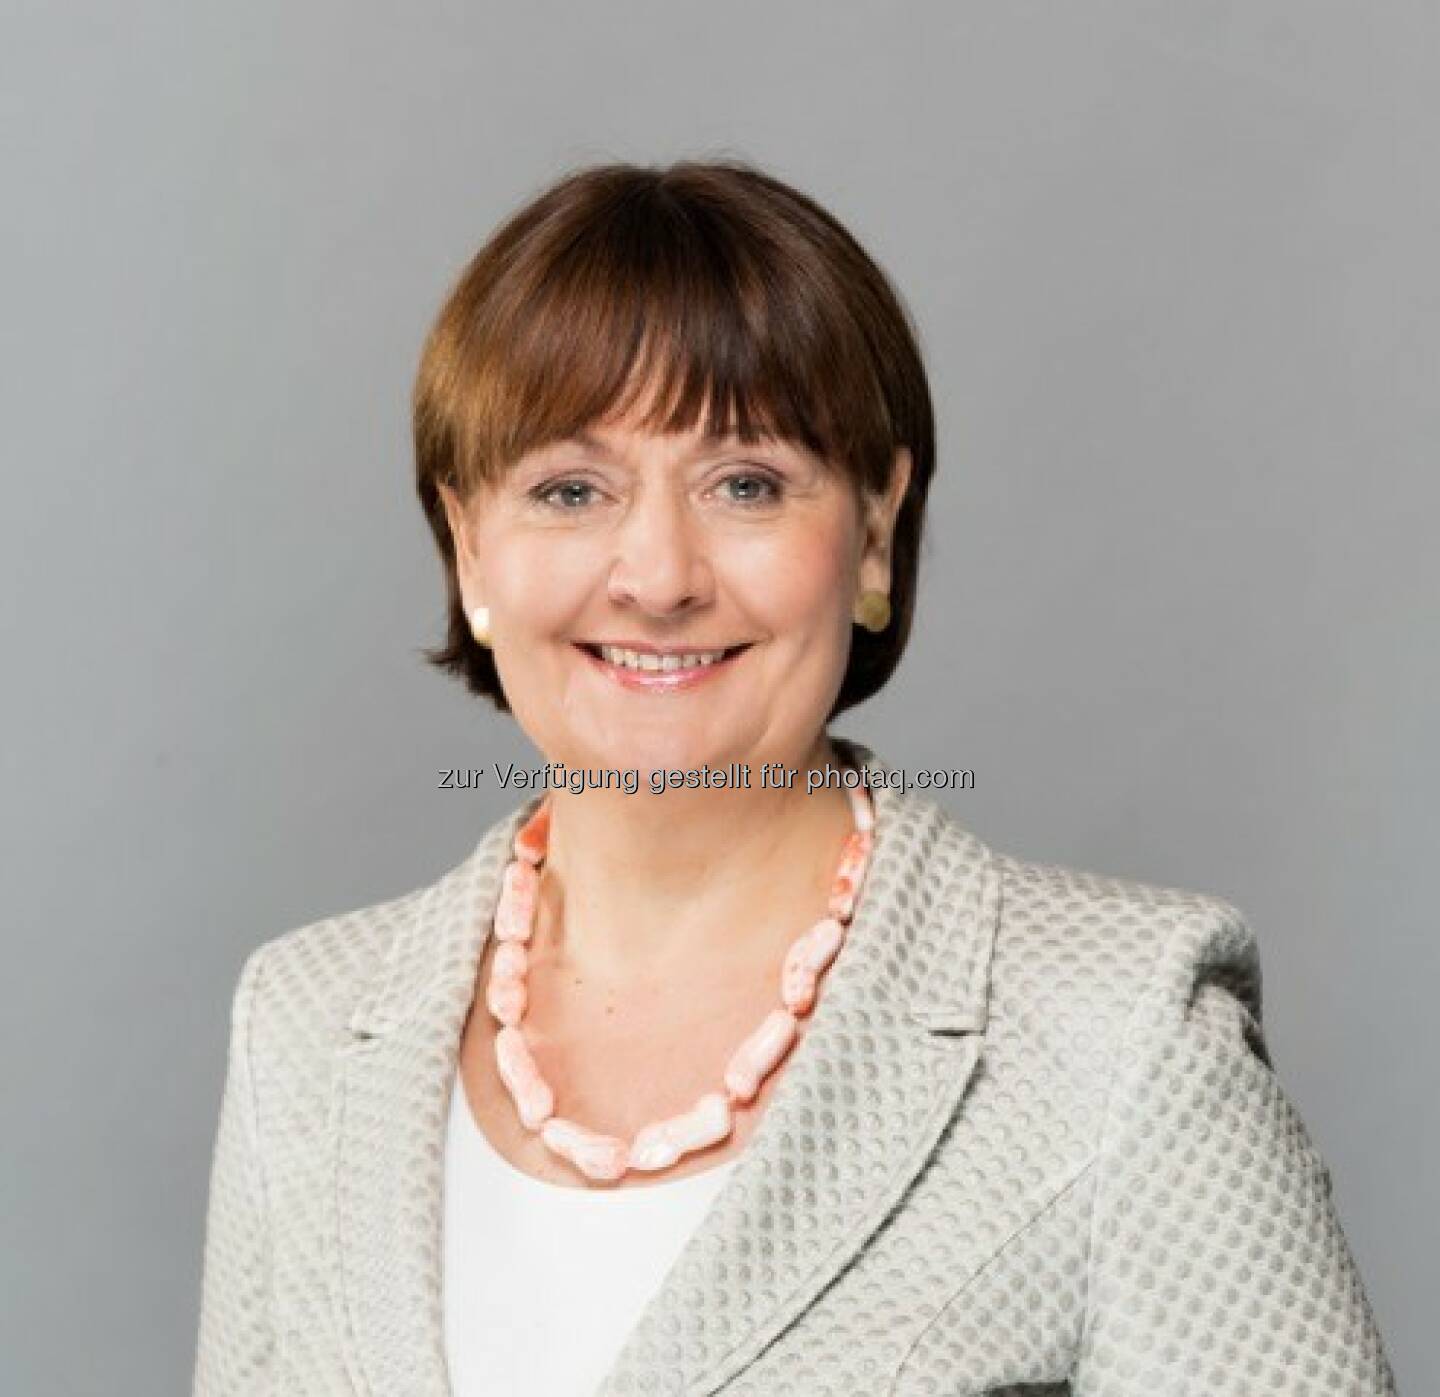 Herta Stockbauer (BKS Bank-Vorstandsvorsitzende) : Halbjahresergebnis - BKS Bank profitiert von hoher Kundenzufriedenheit : Fotocredit ©Gleiss